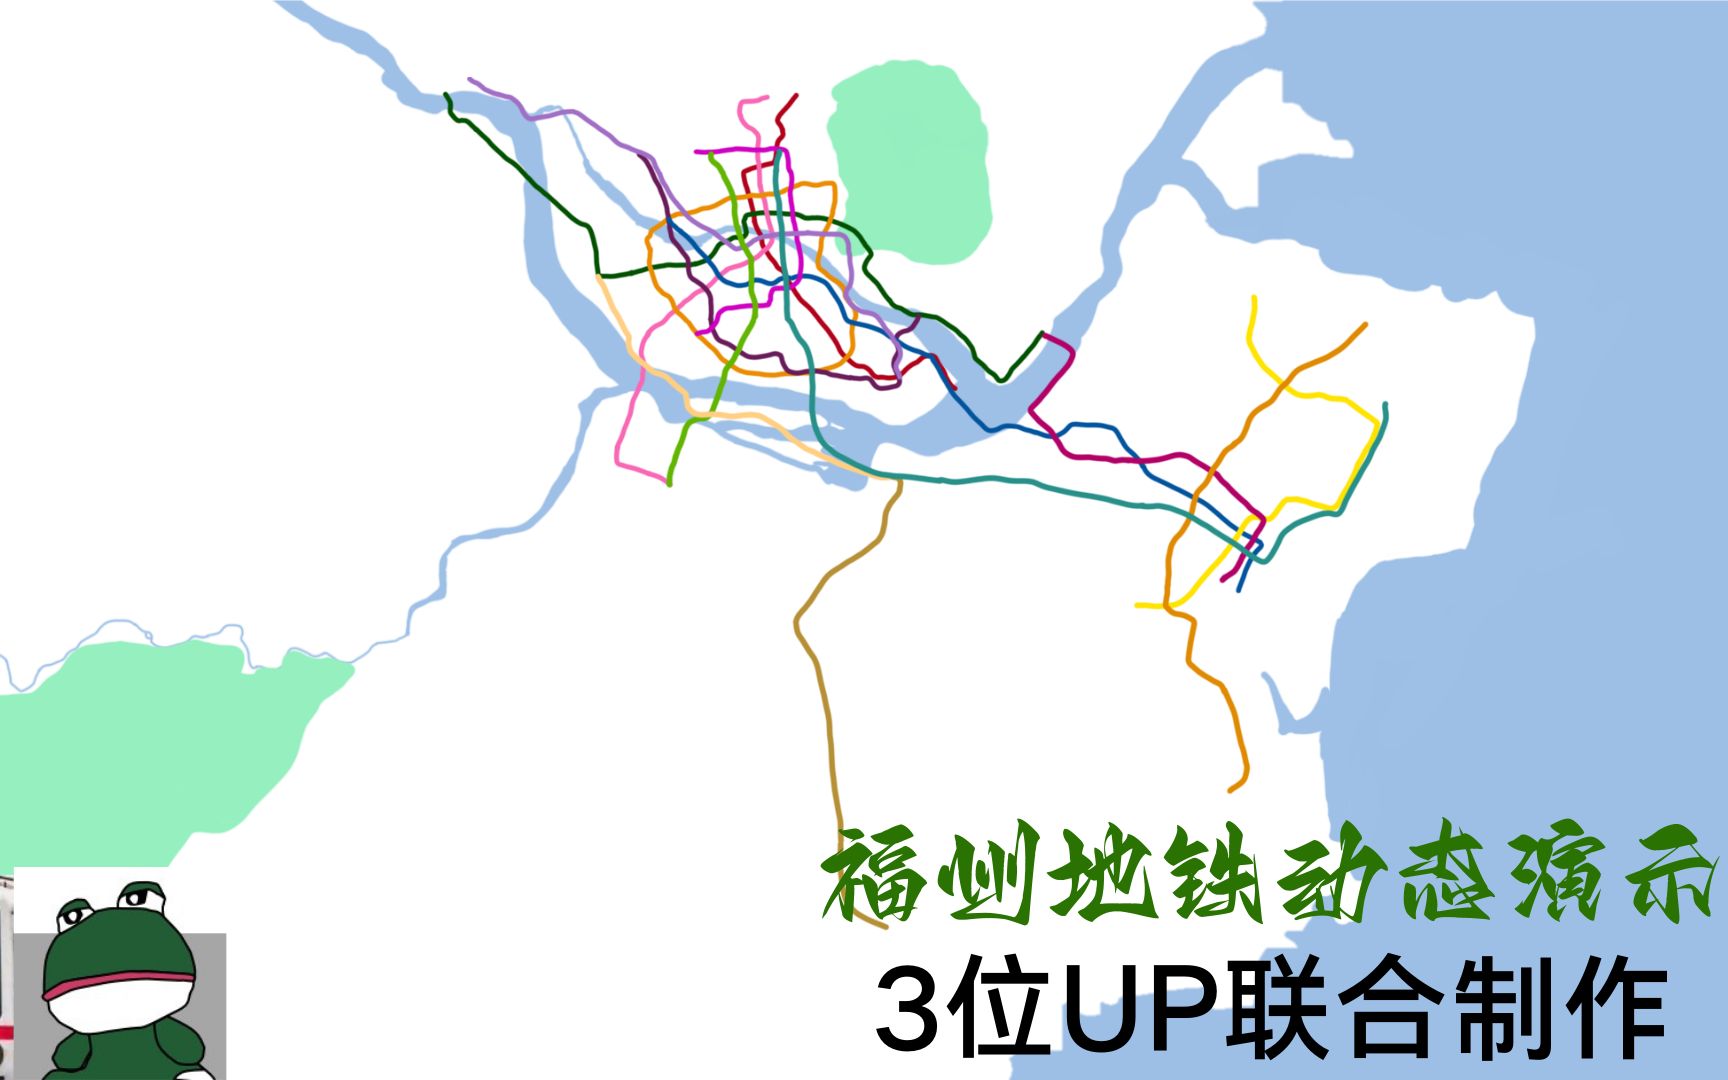 【福州地铁】福州地铁2035 远期规划动态演示